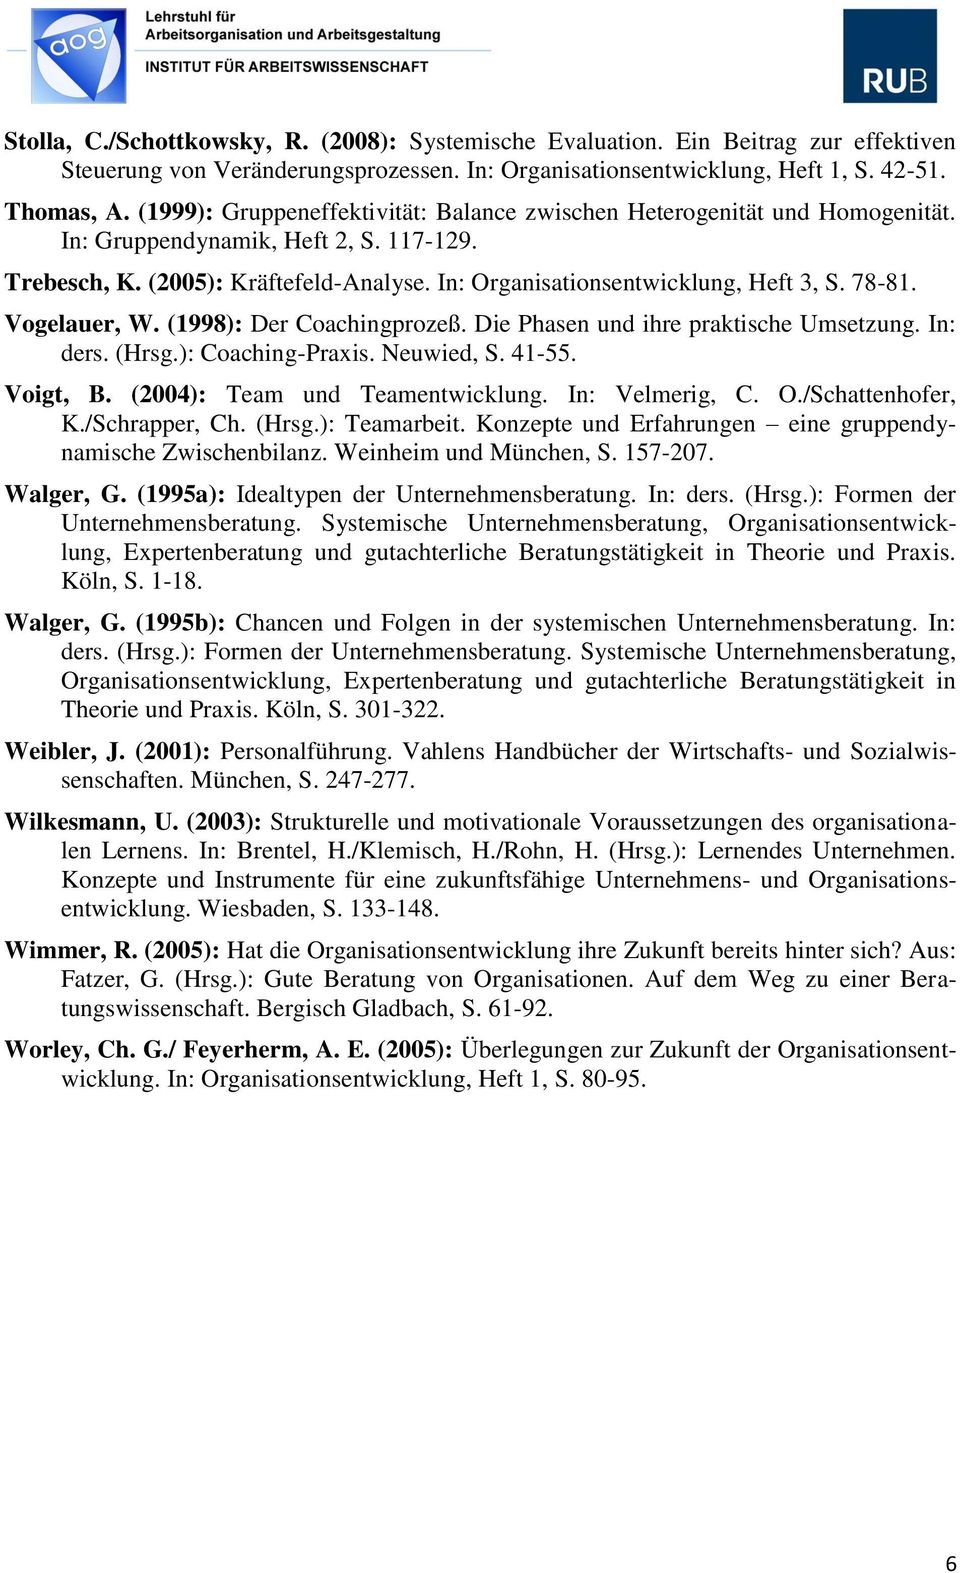 78-81. Vogelauer, W. (1998): Der Coachingprozeß. Die Phasen und ihre praktische Umsetzung. In: ders. (Hrsg.): Coaching-Praxis. Neuwied, S. 41-55. Voigt, B. (2004): Team und Teamentwicklung.